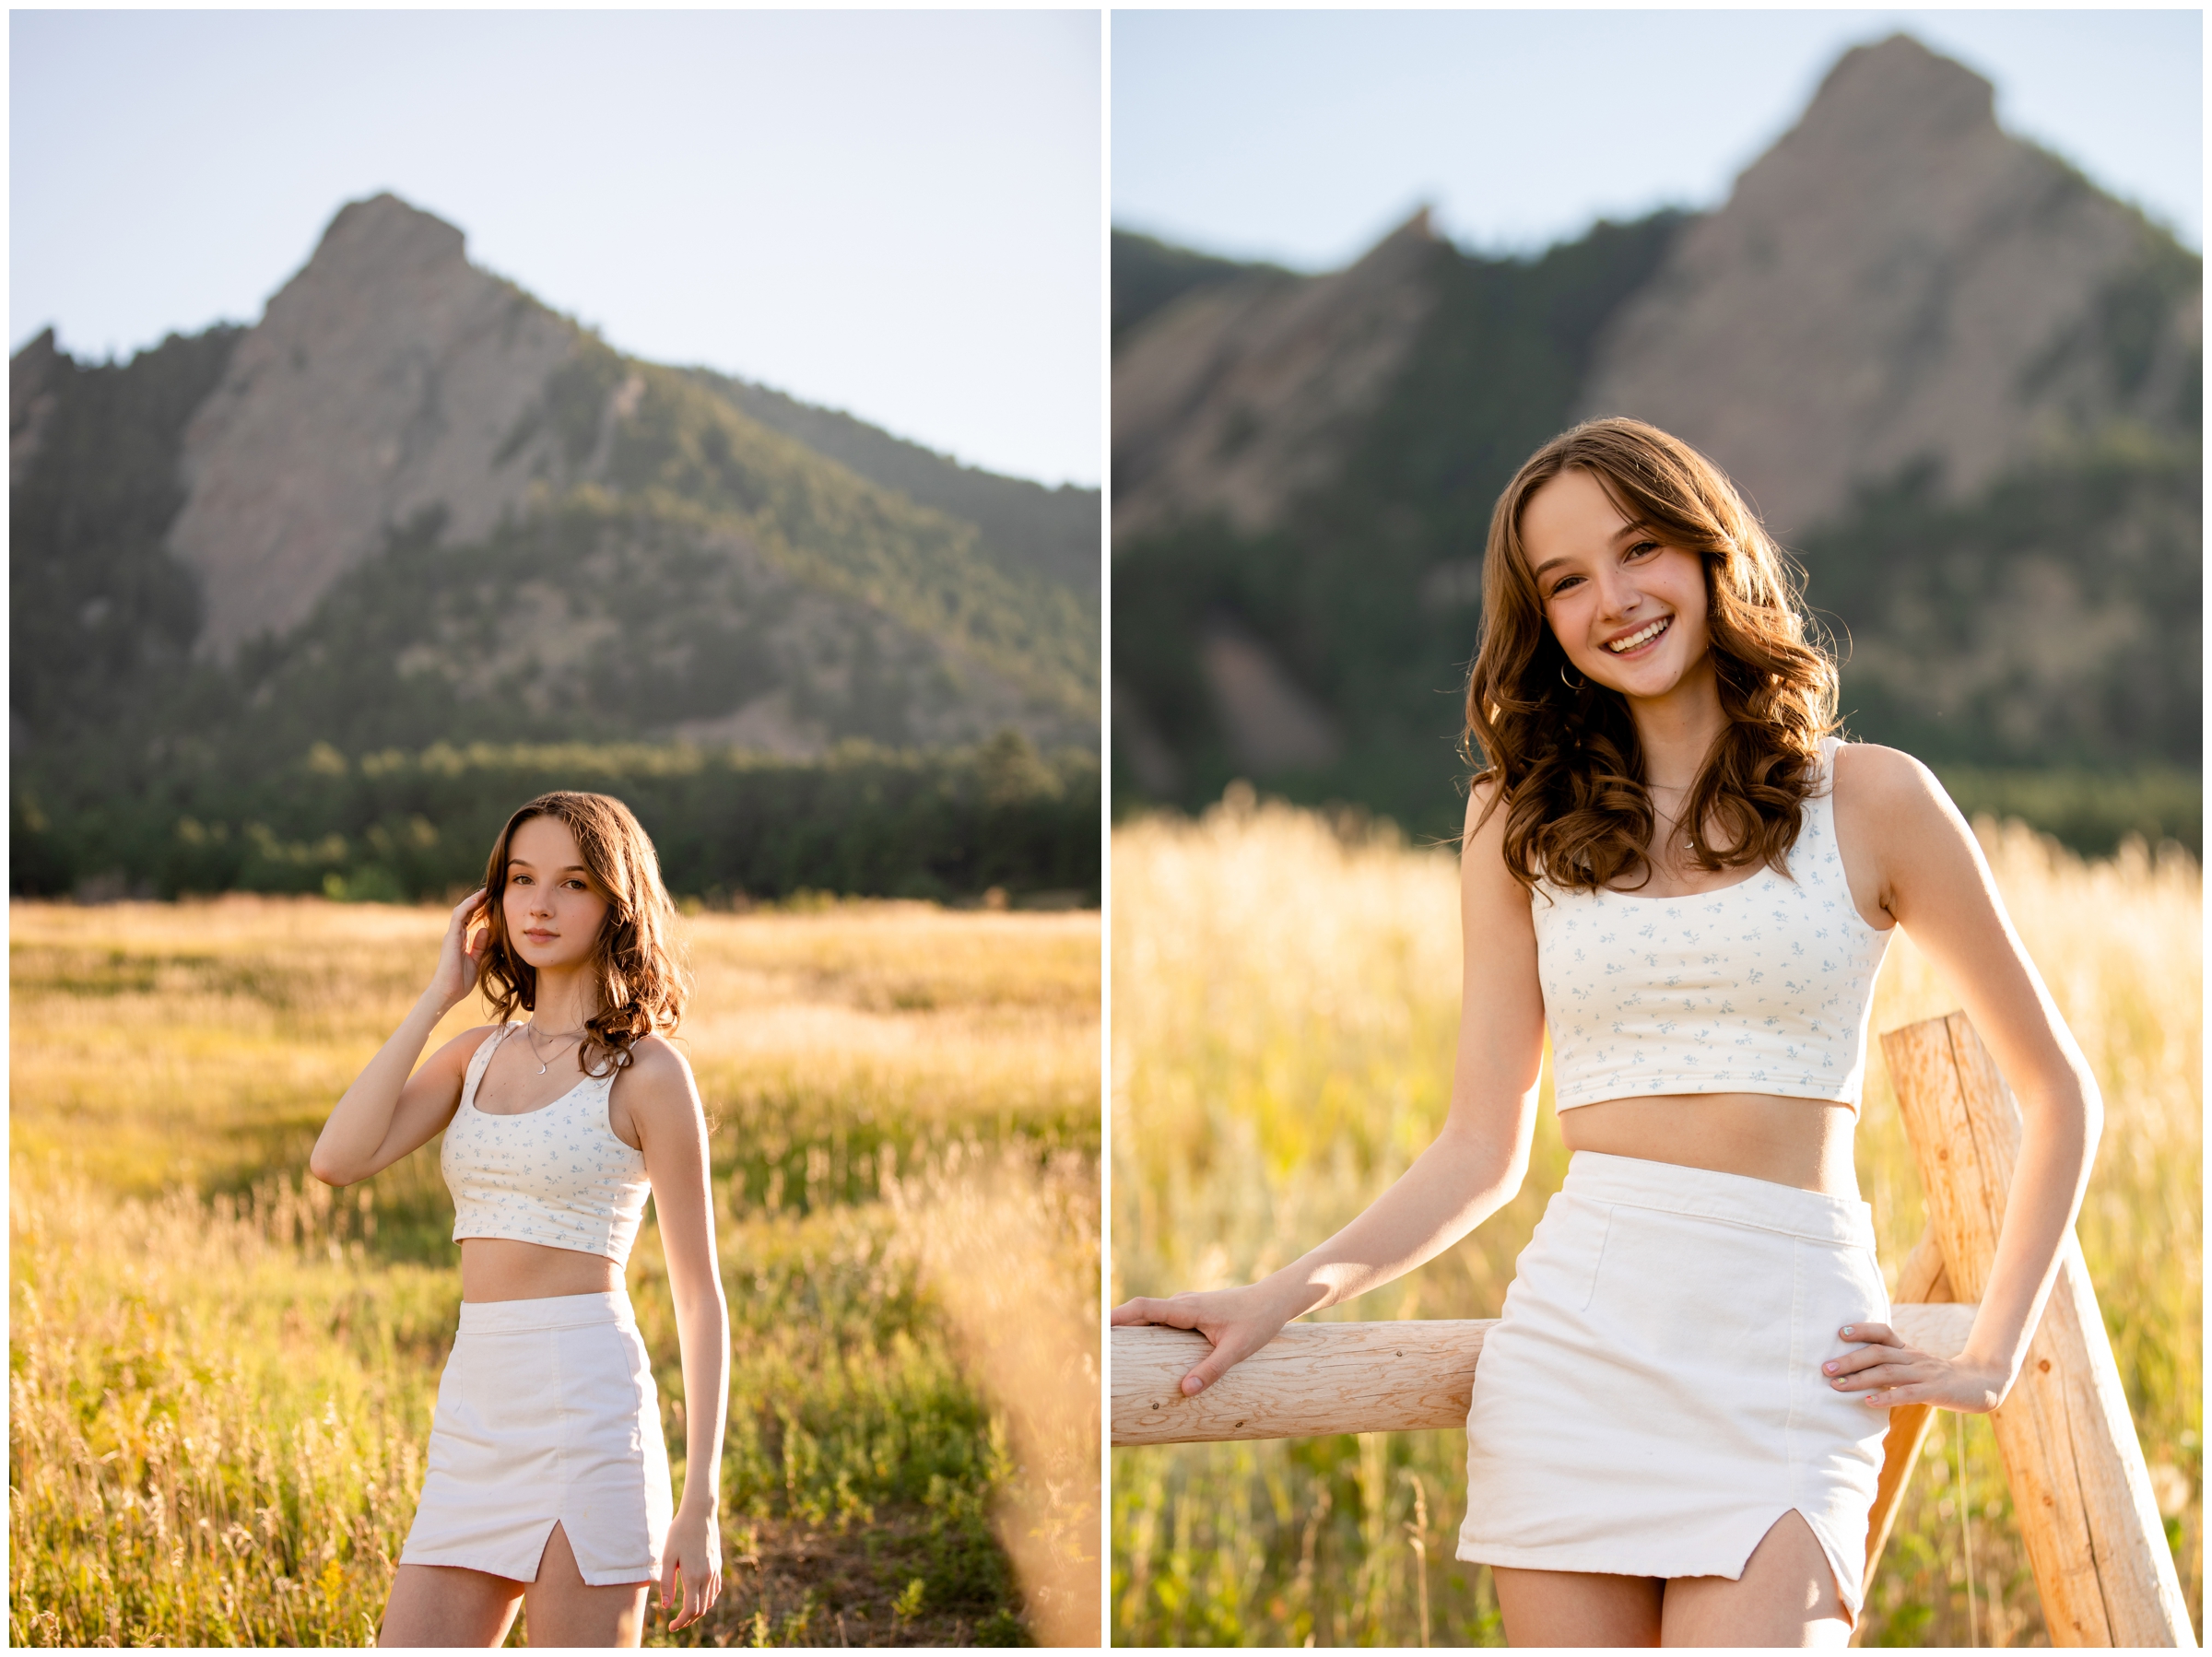 Senior pictures in Boulder at Chautauqua Park by best Colorado senior portrait photographer Plum Pretty Photography